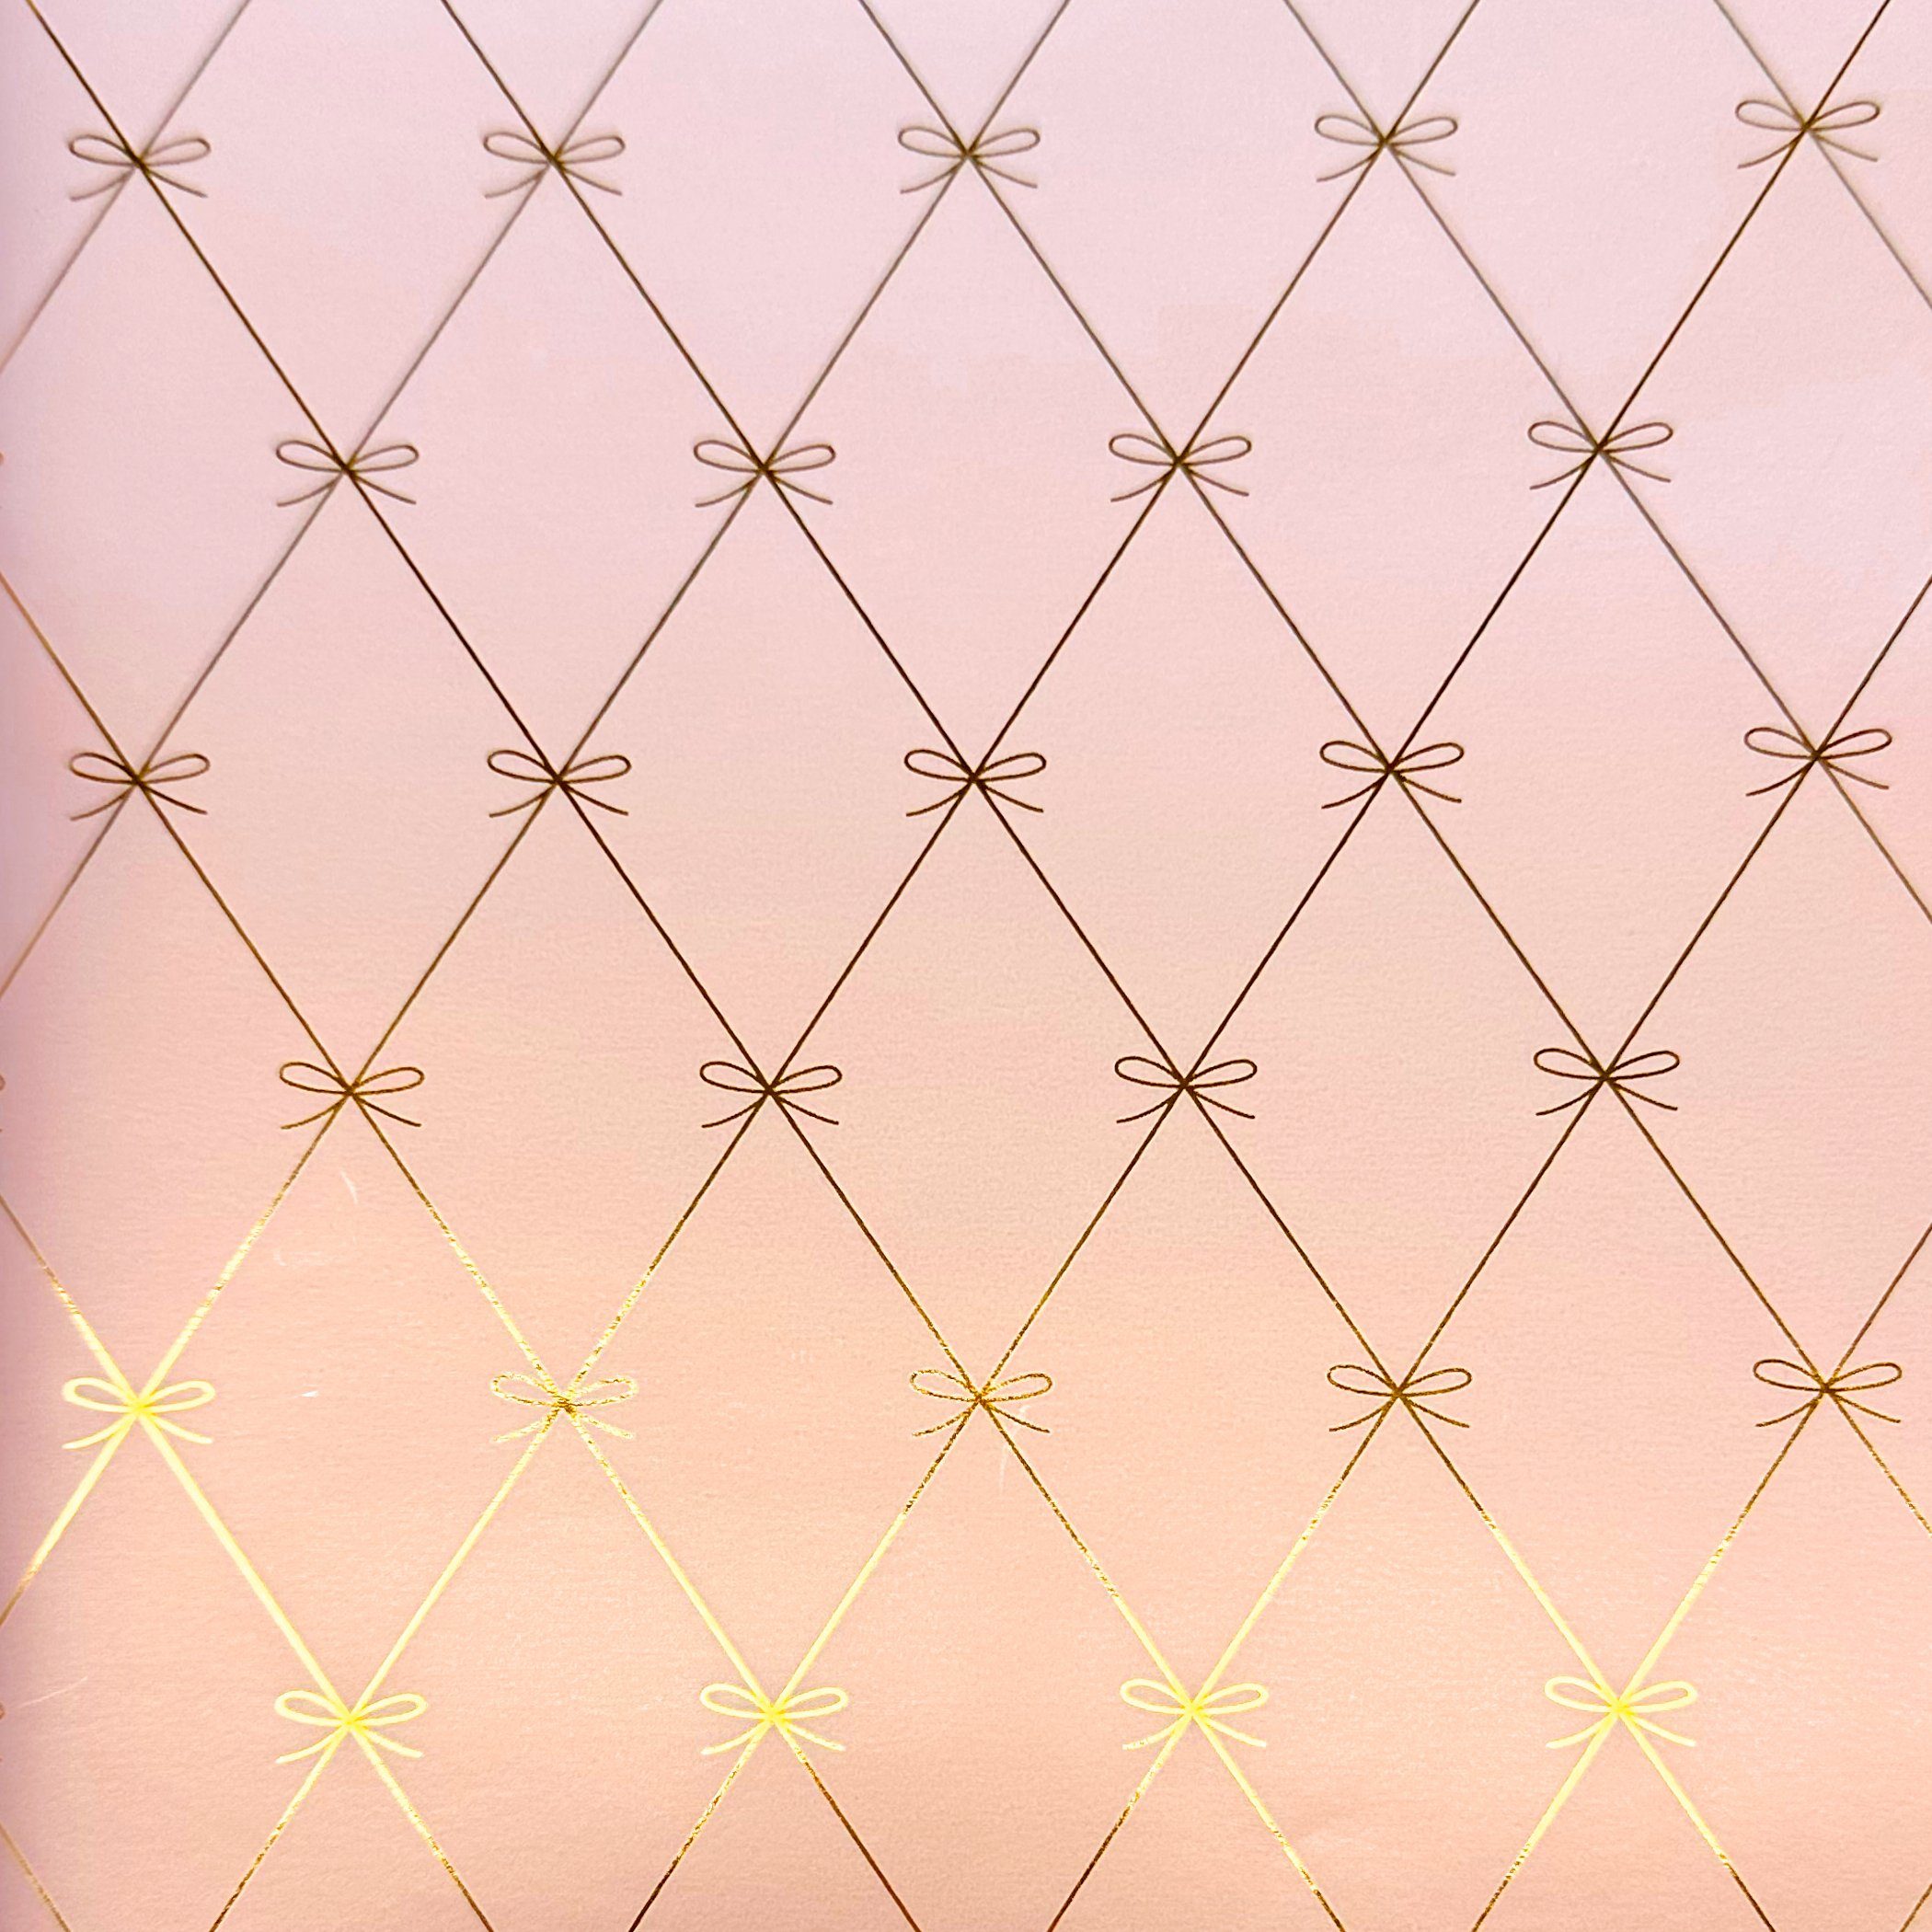 Star Geschenkpapier, Geschenkpapier mit Schleifen Muster 70cm x 2m Rolle rosa metallic matt | Geschenkpapier